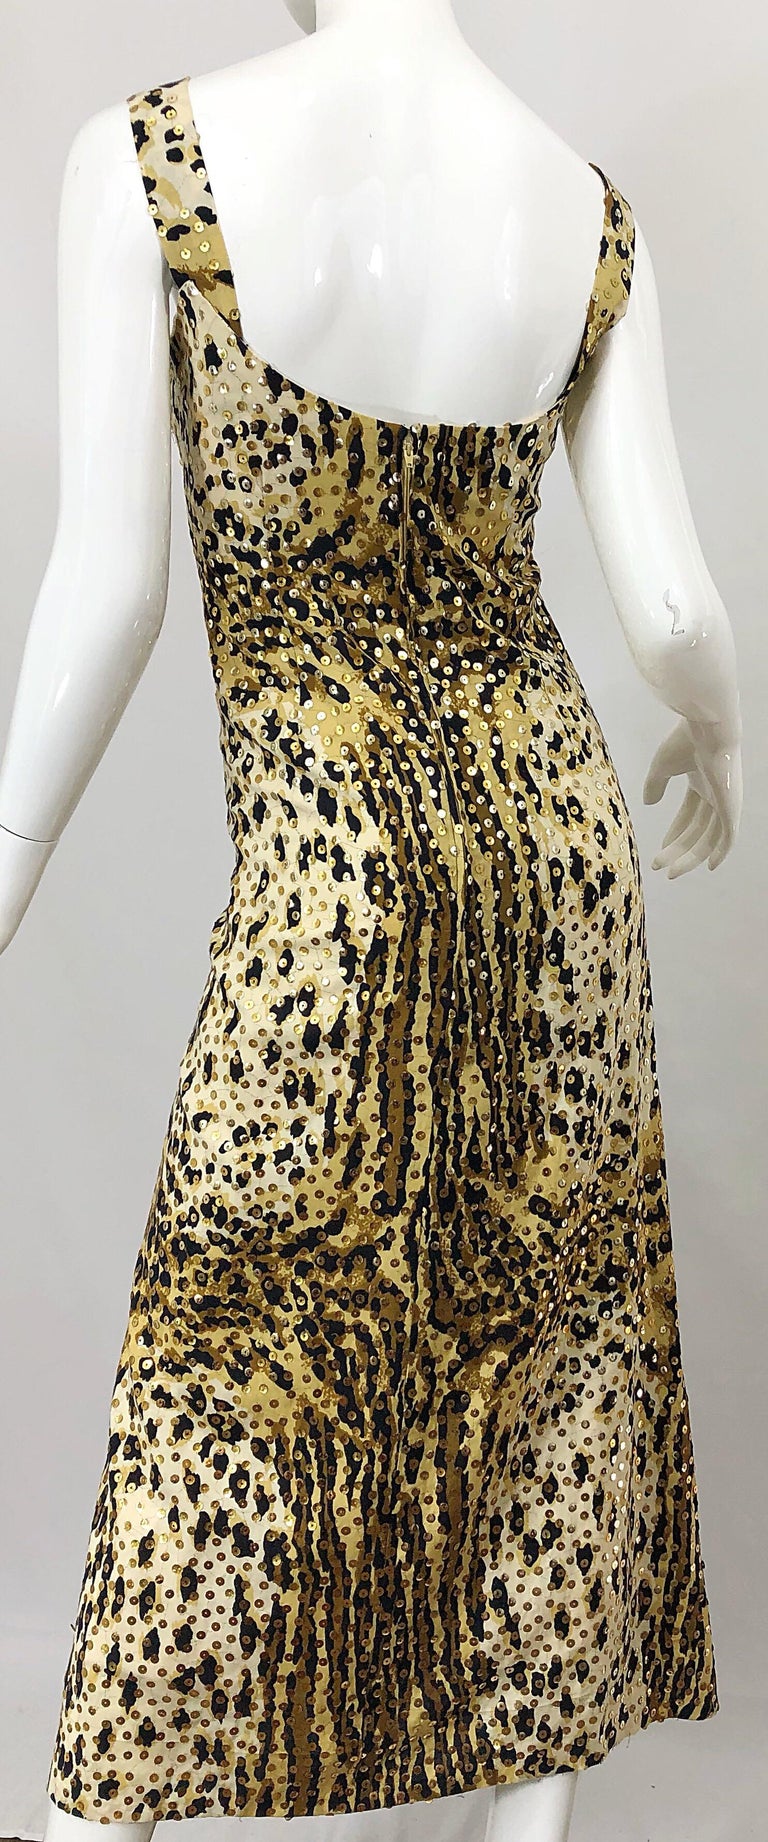 Mollie Parnis 1970s Leopard Cheetah Print Sequined Vintage 70s Cotton Midi Dress For Sale 7